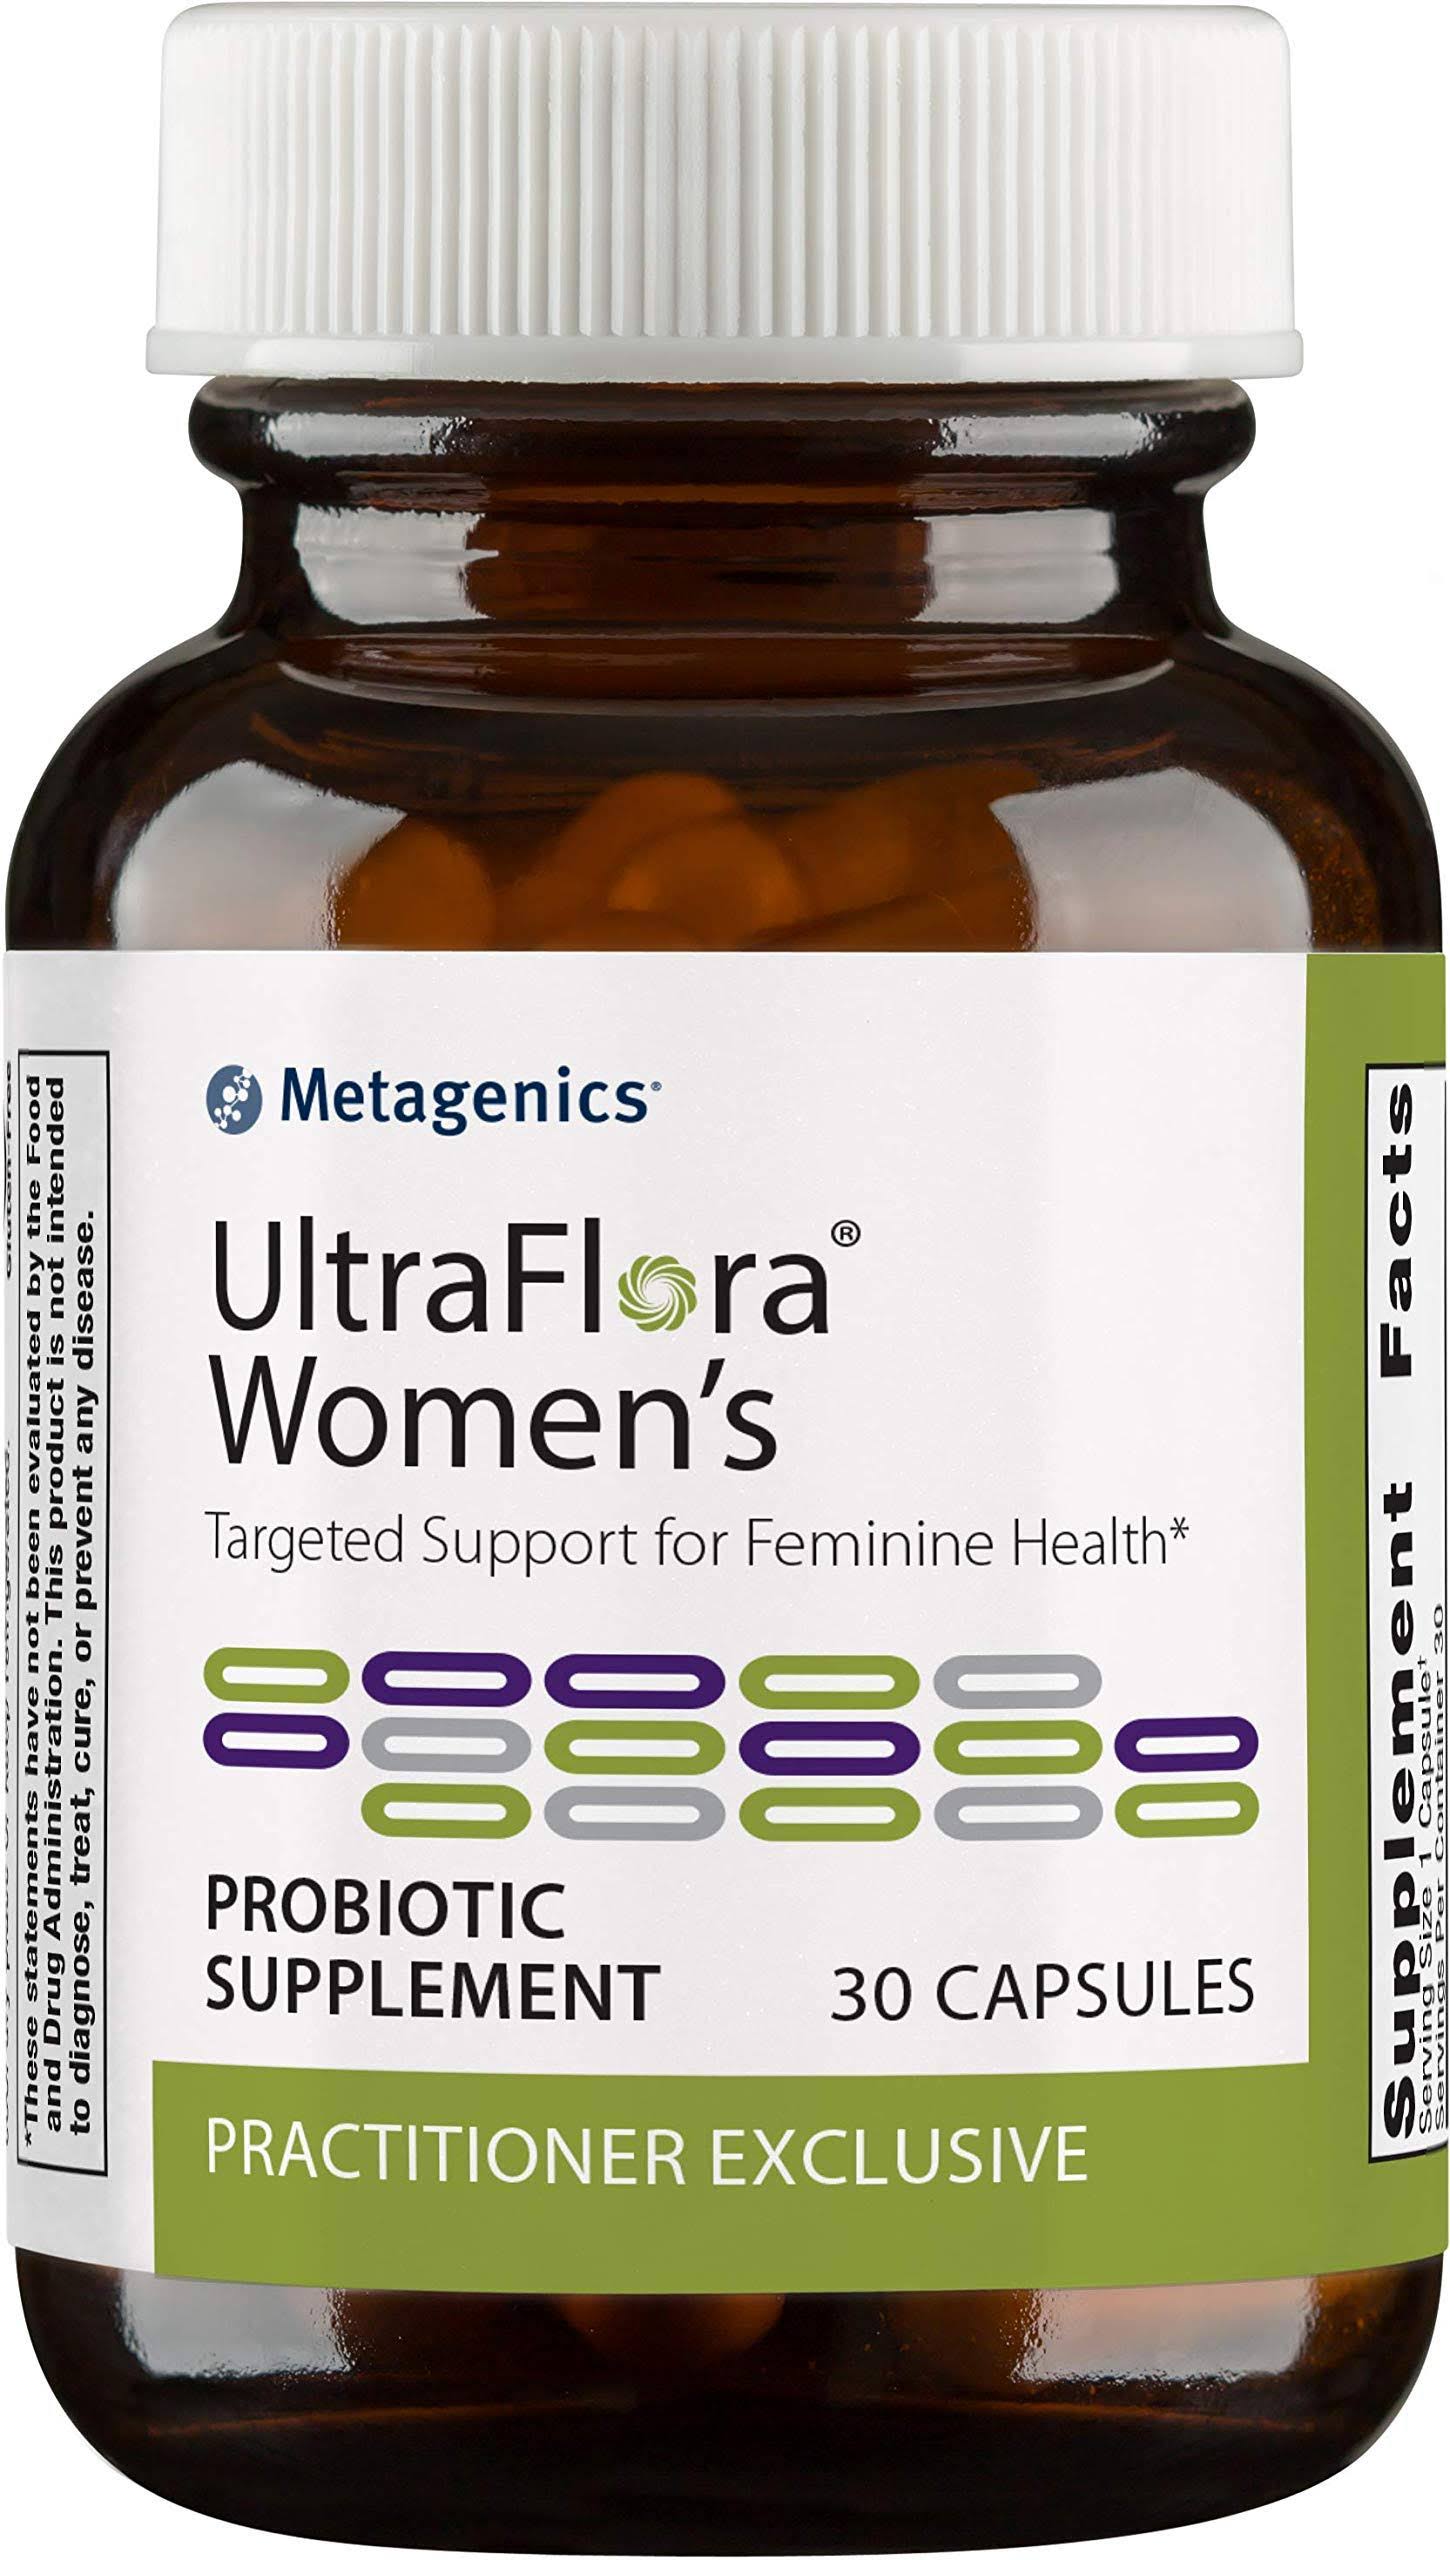 Metagenics UltraFlora Women's Probiotic Supplement - 30 Capsules